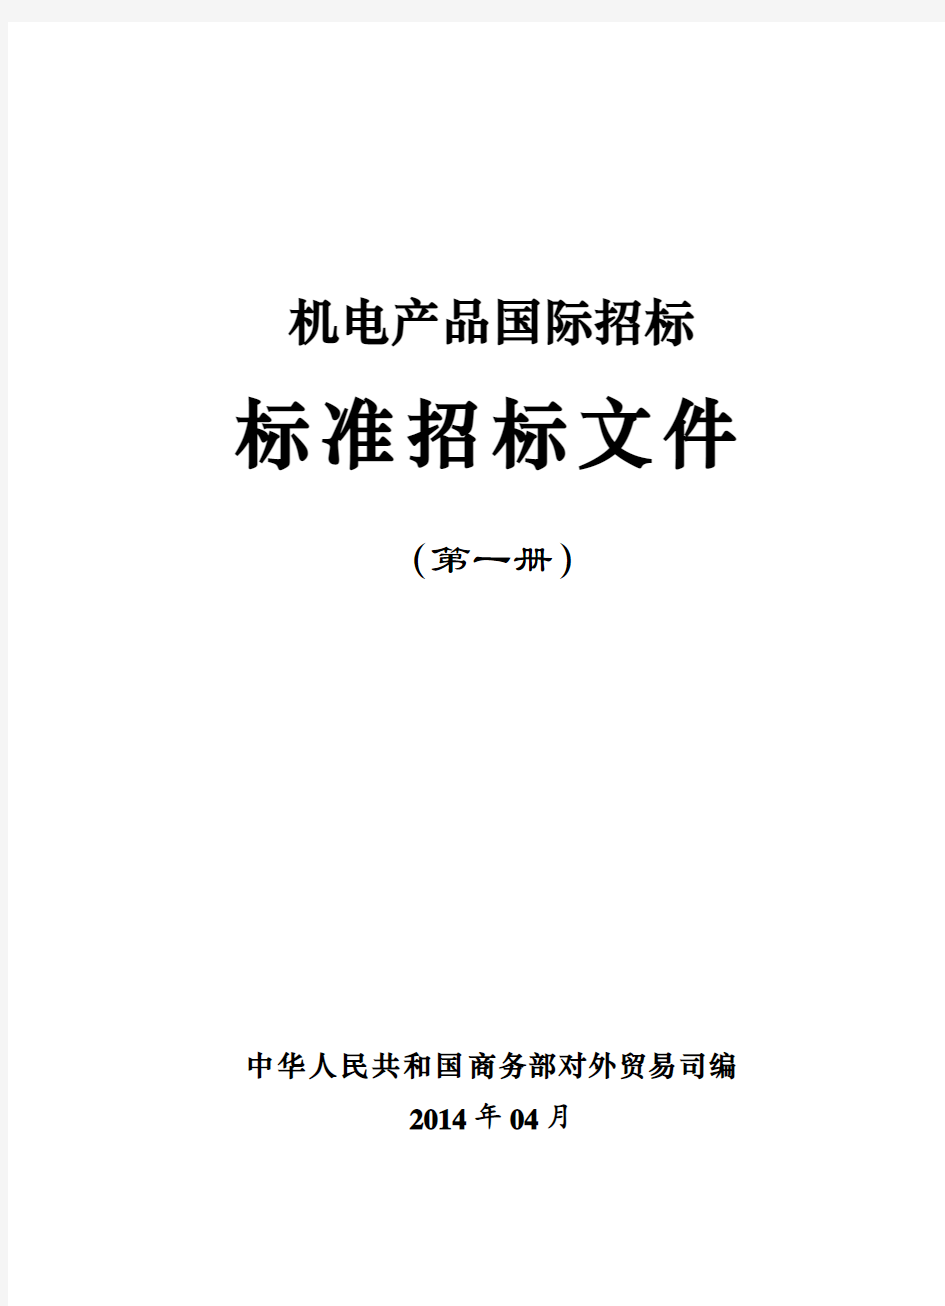 2014年版机电产品国际招标标准文件(第一册)